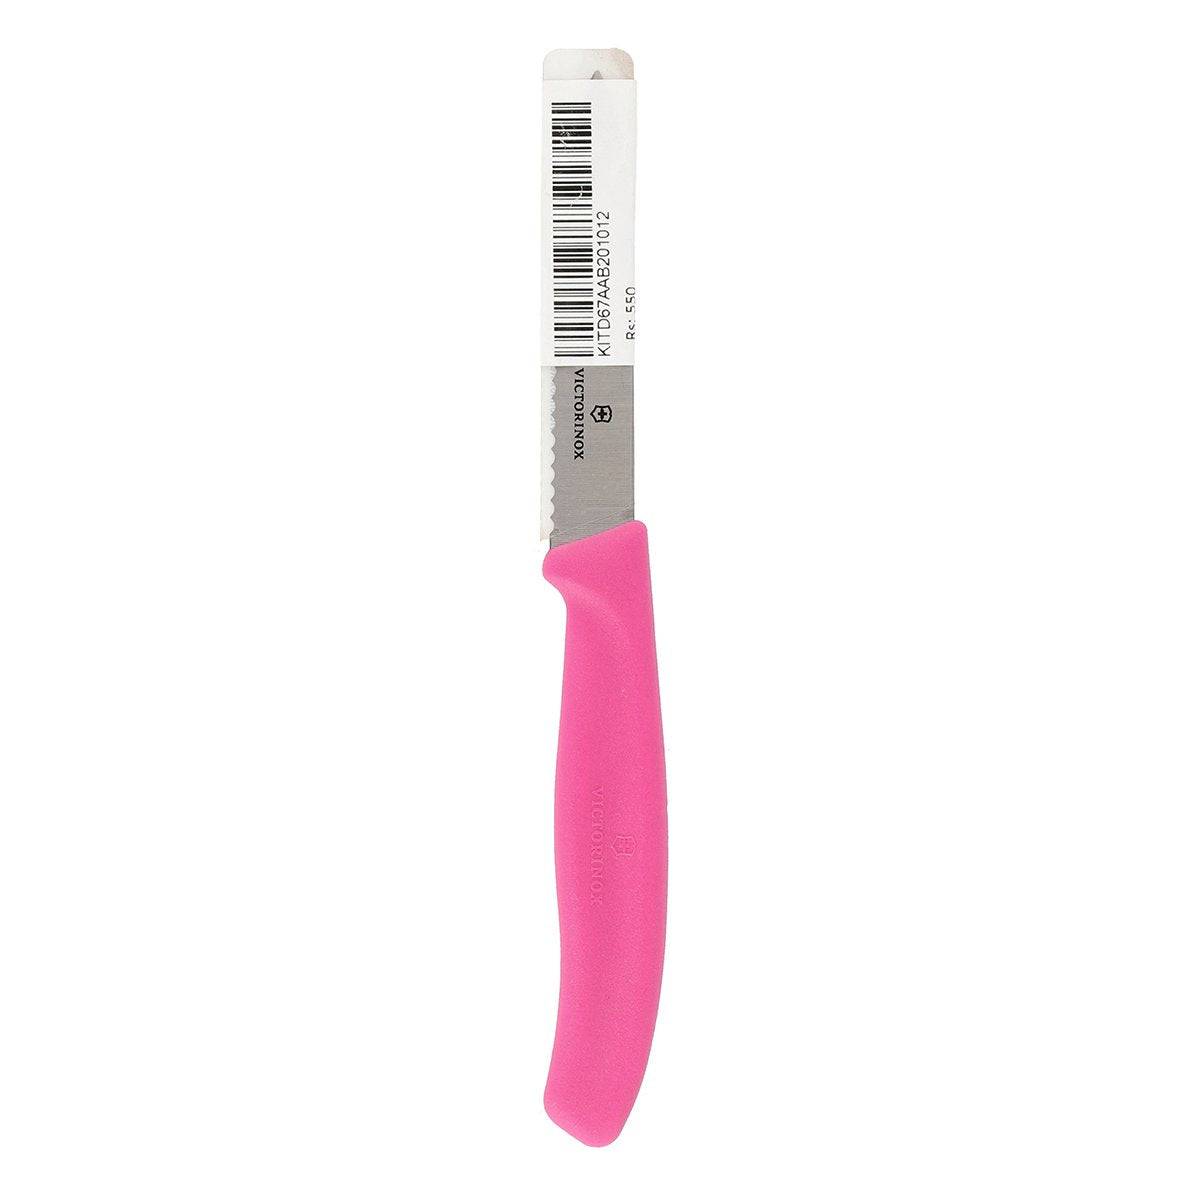 Paring Knife - Pink 8 CM.6. 7636.L115